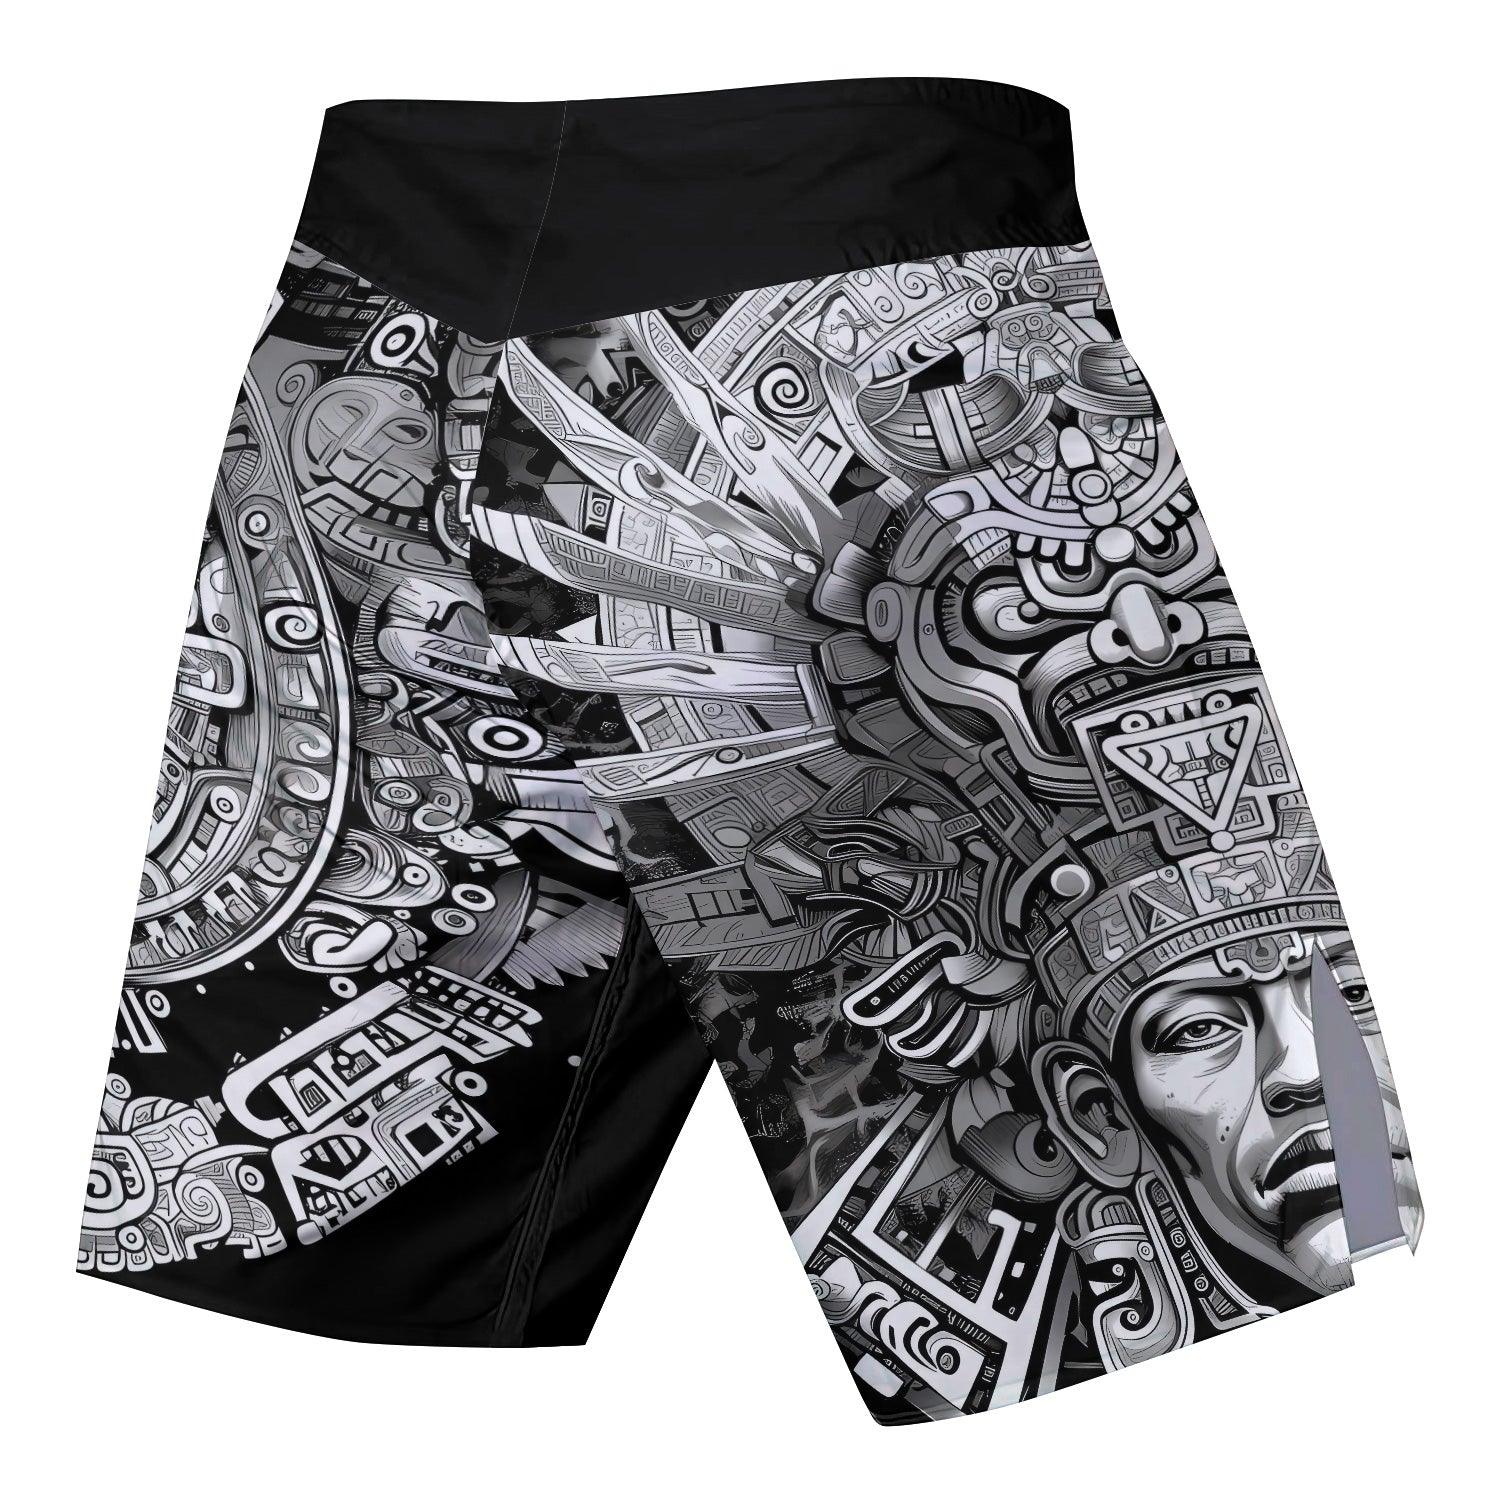 Brave Aztec Warrior Fight Shorts